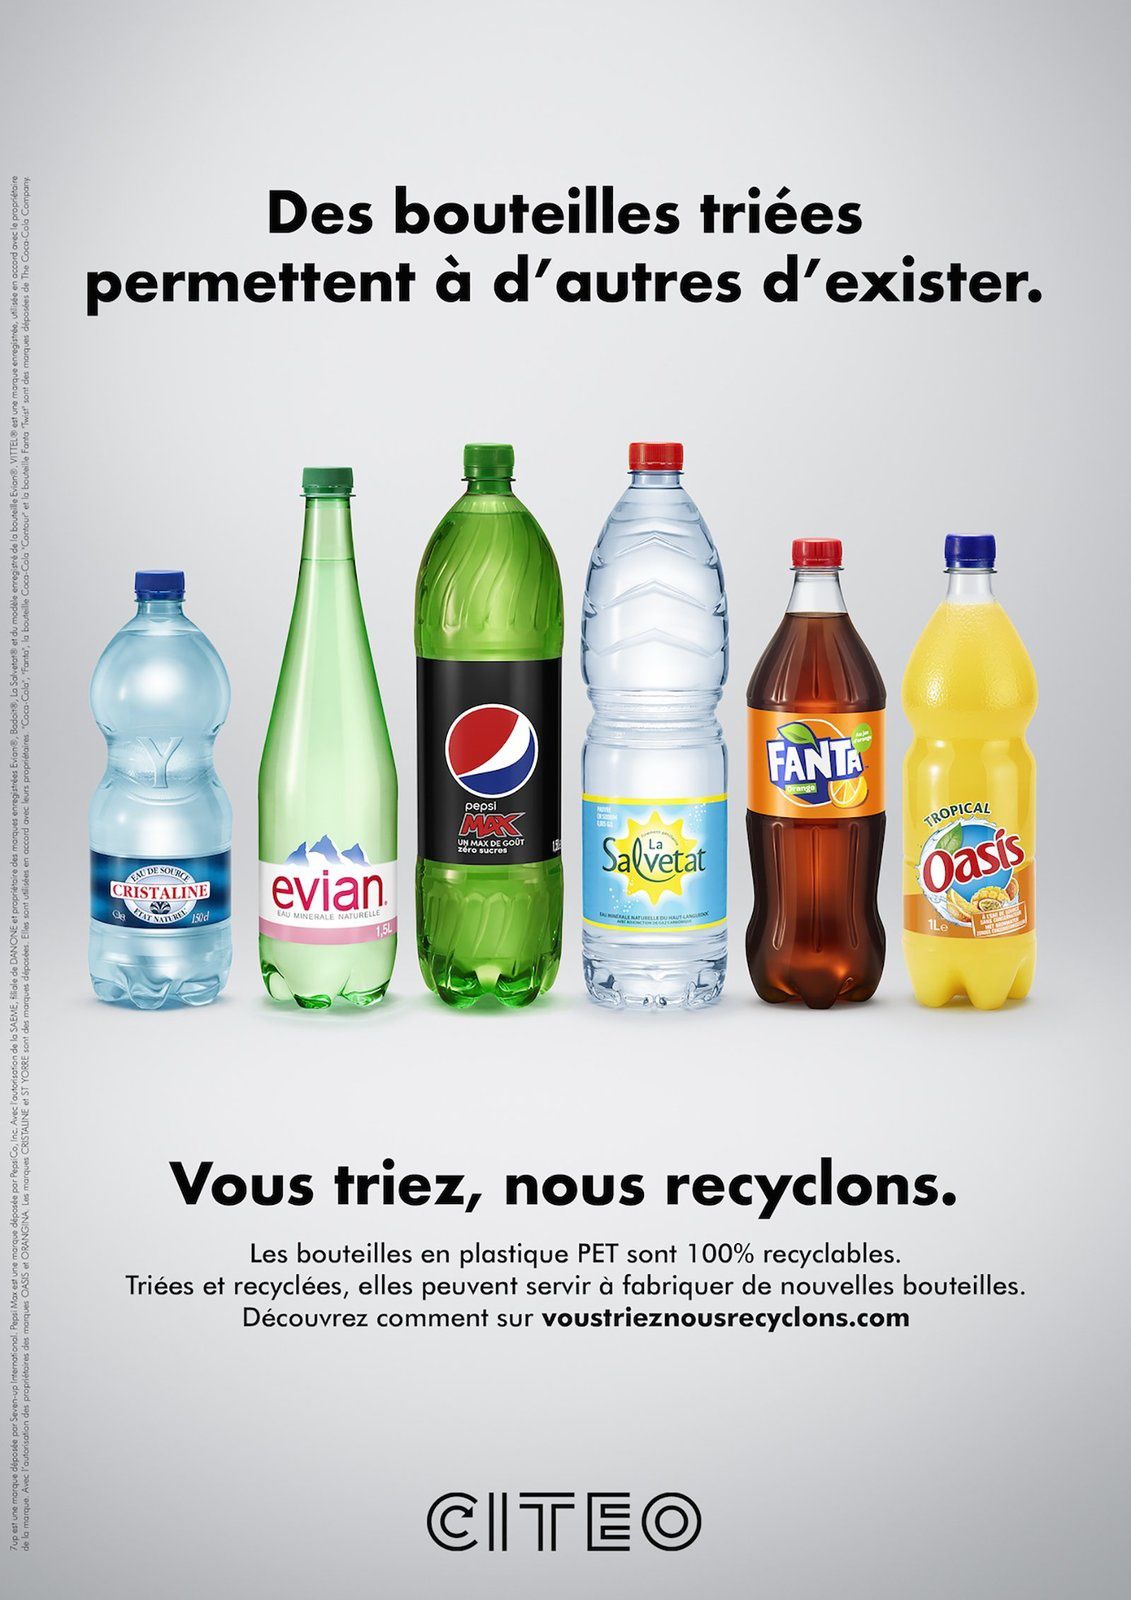 Citeo : "Des bouteilles triées permettent à d'autres d'exister" / "Vous triez, nous recyclons" I Agence : 84.Paris, France (2018)